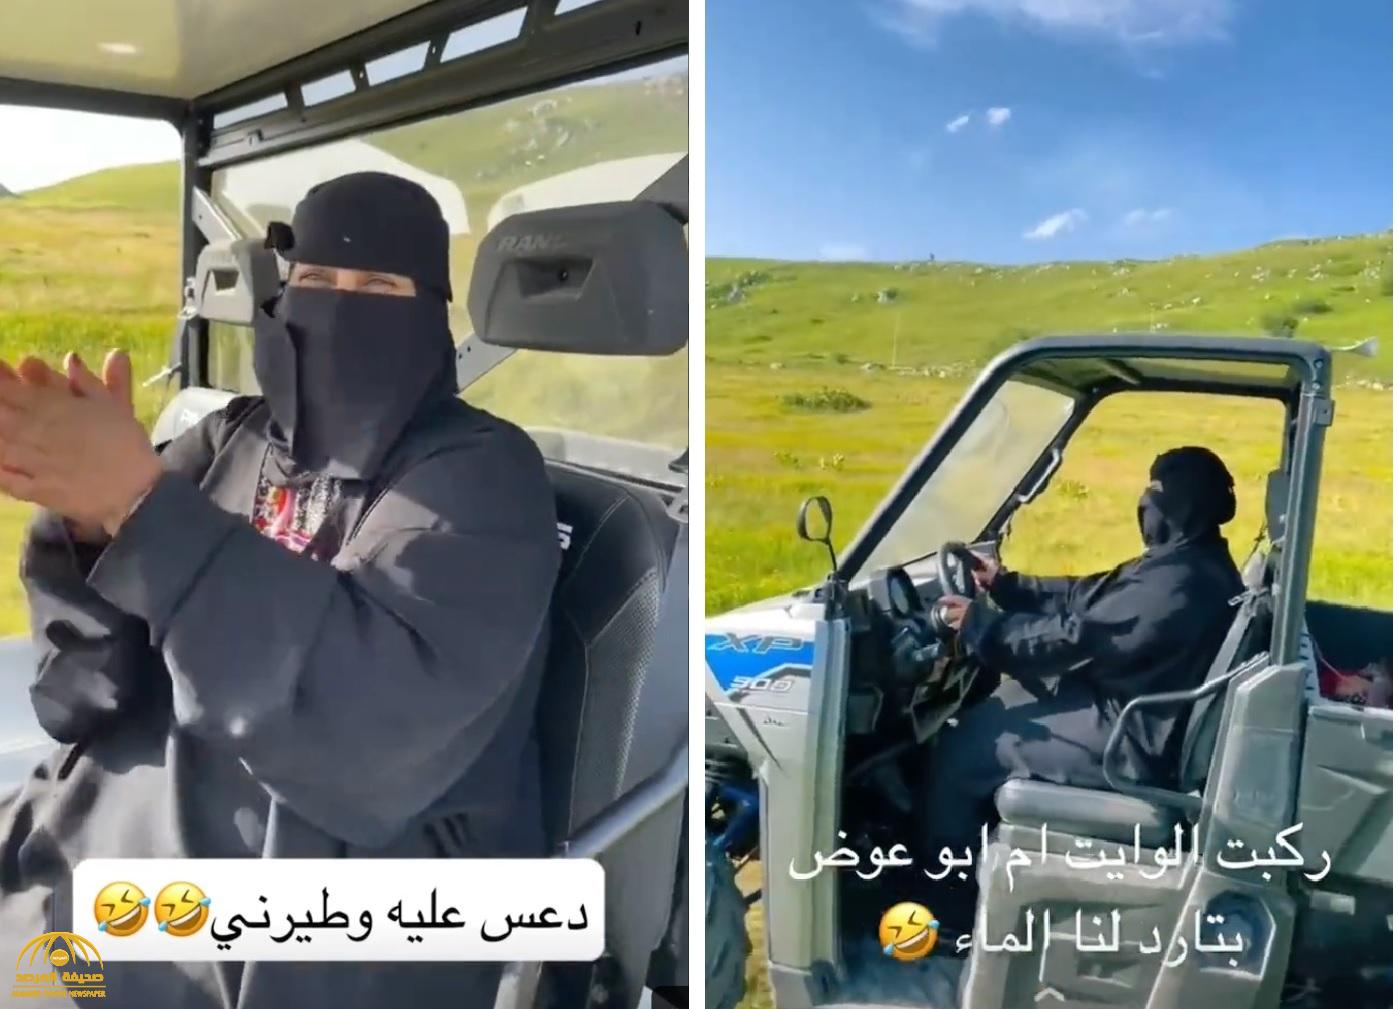 شاهد.. عبدالرحمن المطيري ينشر فيديو لوالدة صديقه "أم عوض" وهي تقود سيارة رياضية وتنزل بها من منحدر خطير في البوسنة